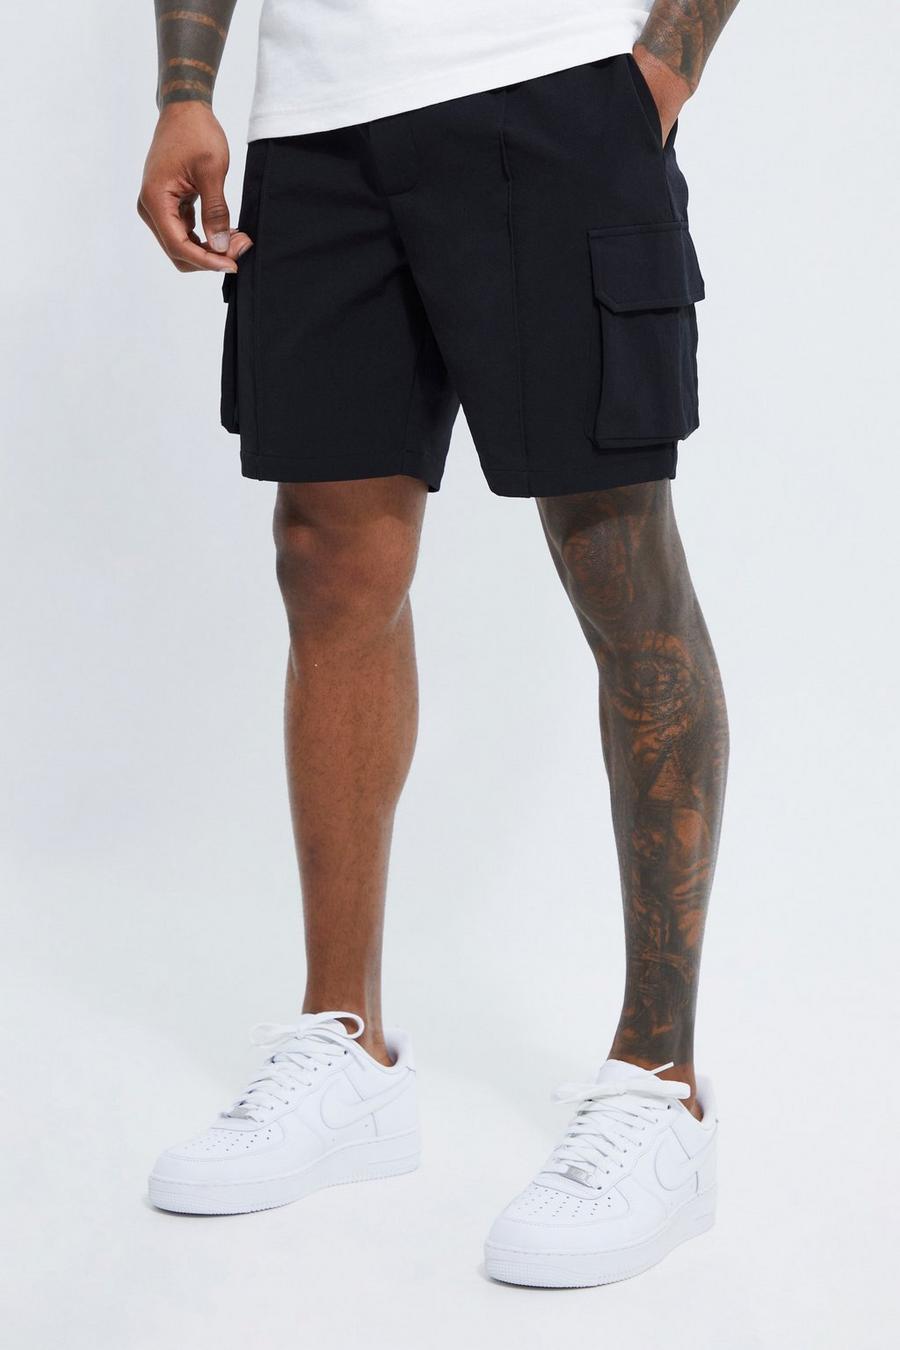 Pantalón corto cargo elástico ajustado con alforza, Black